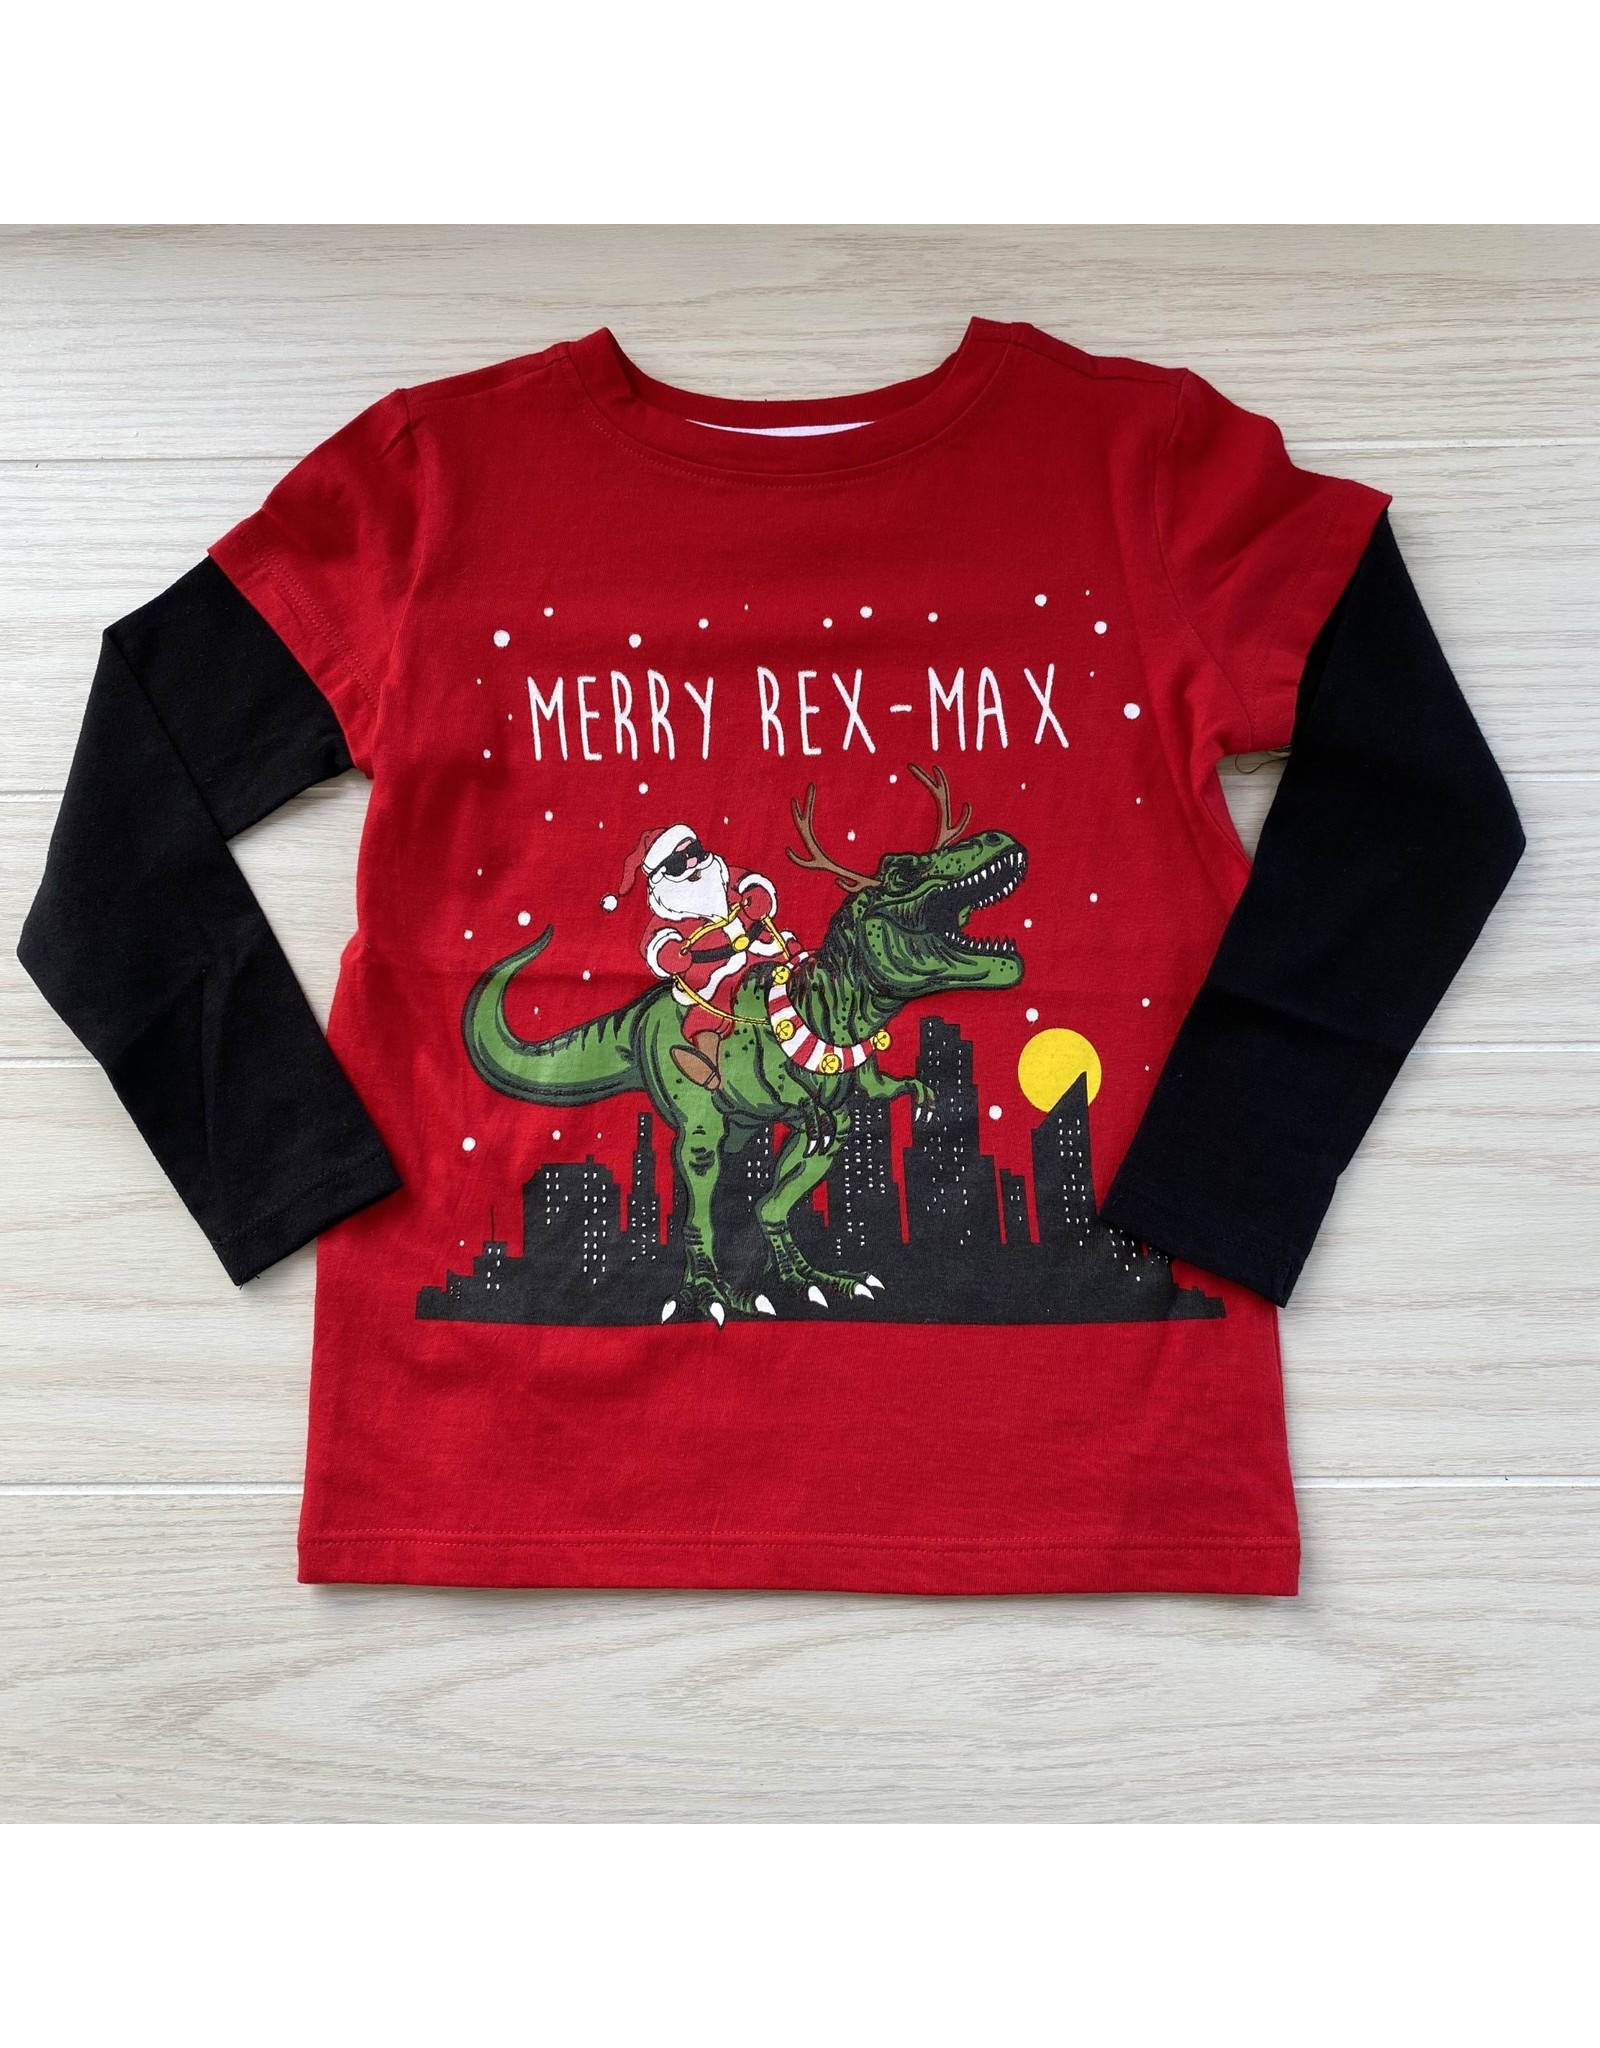 Crumbs- Merry Rex Max Tee